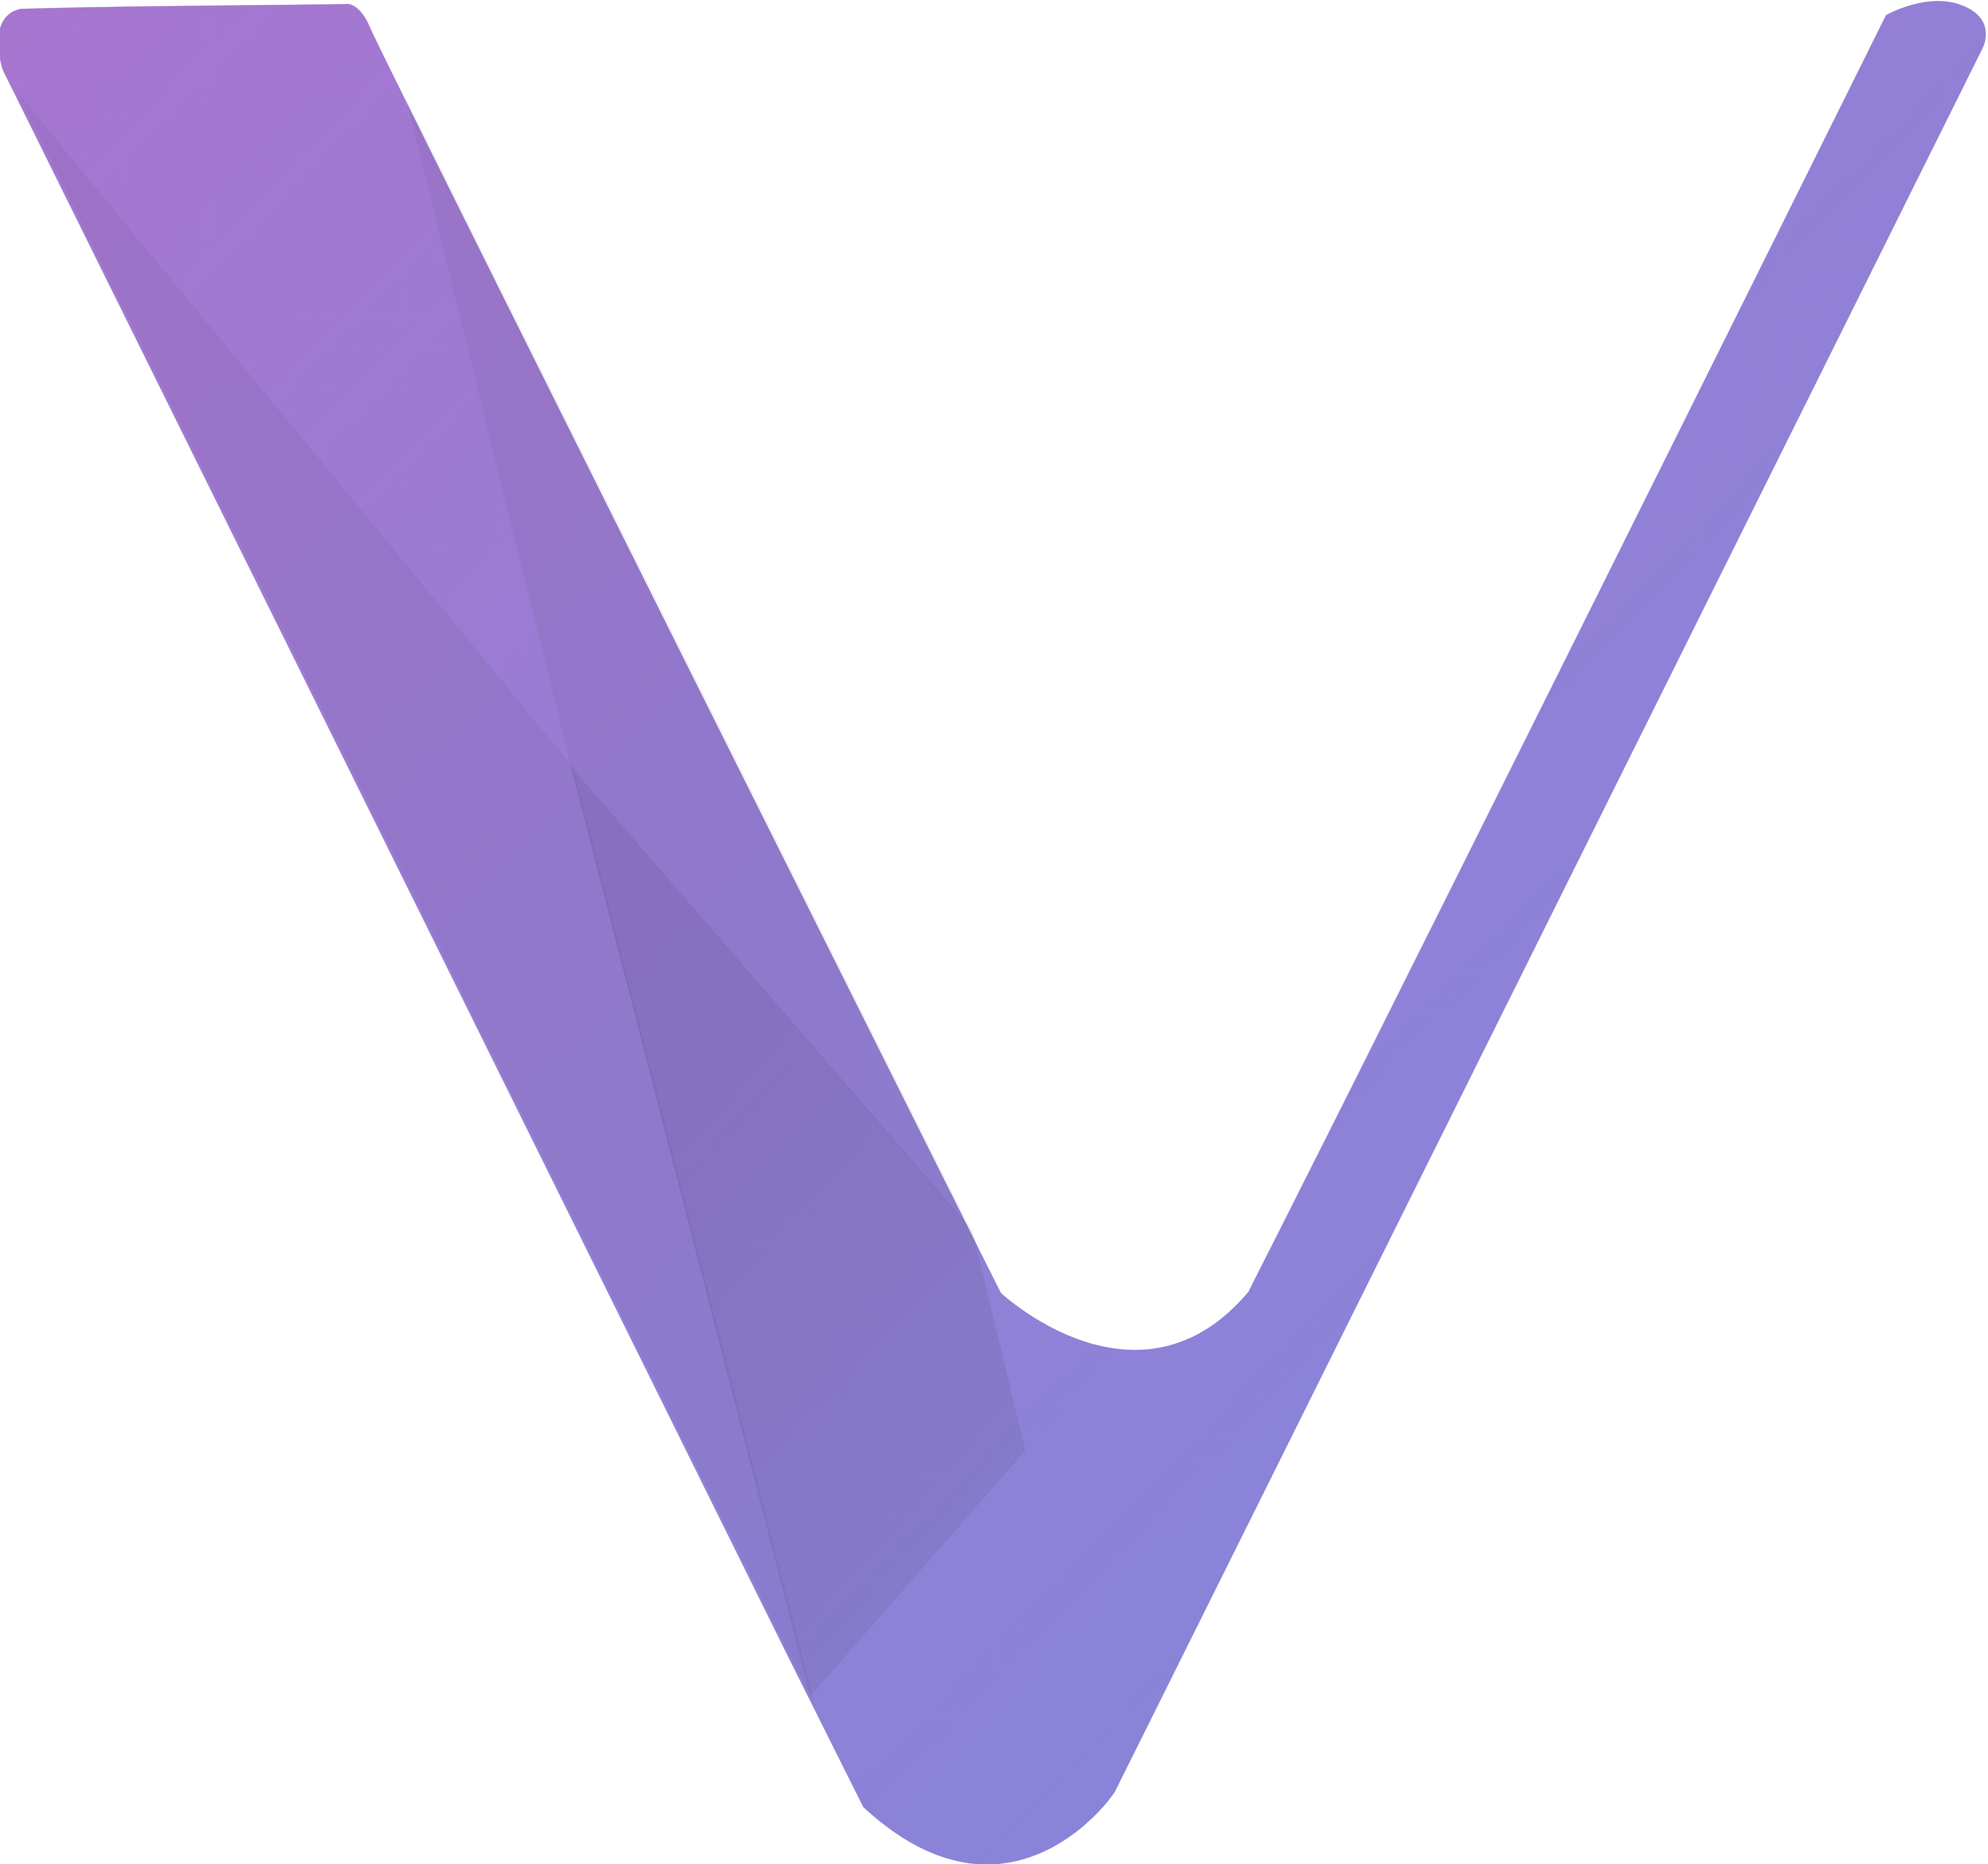 Vechain Logo - VeChain – Logos Download